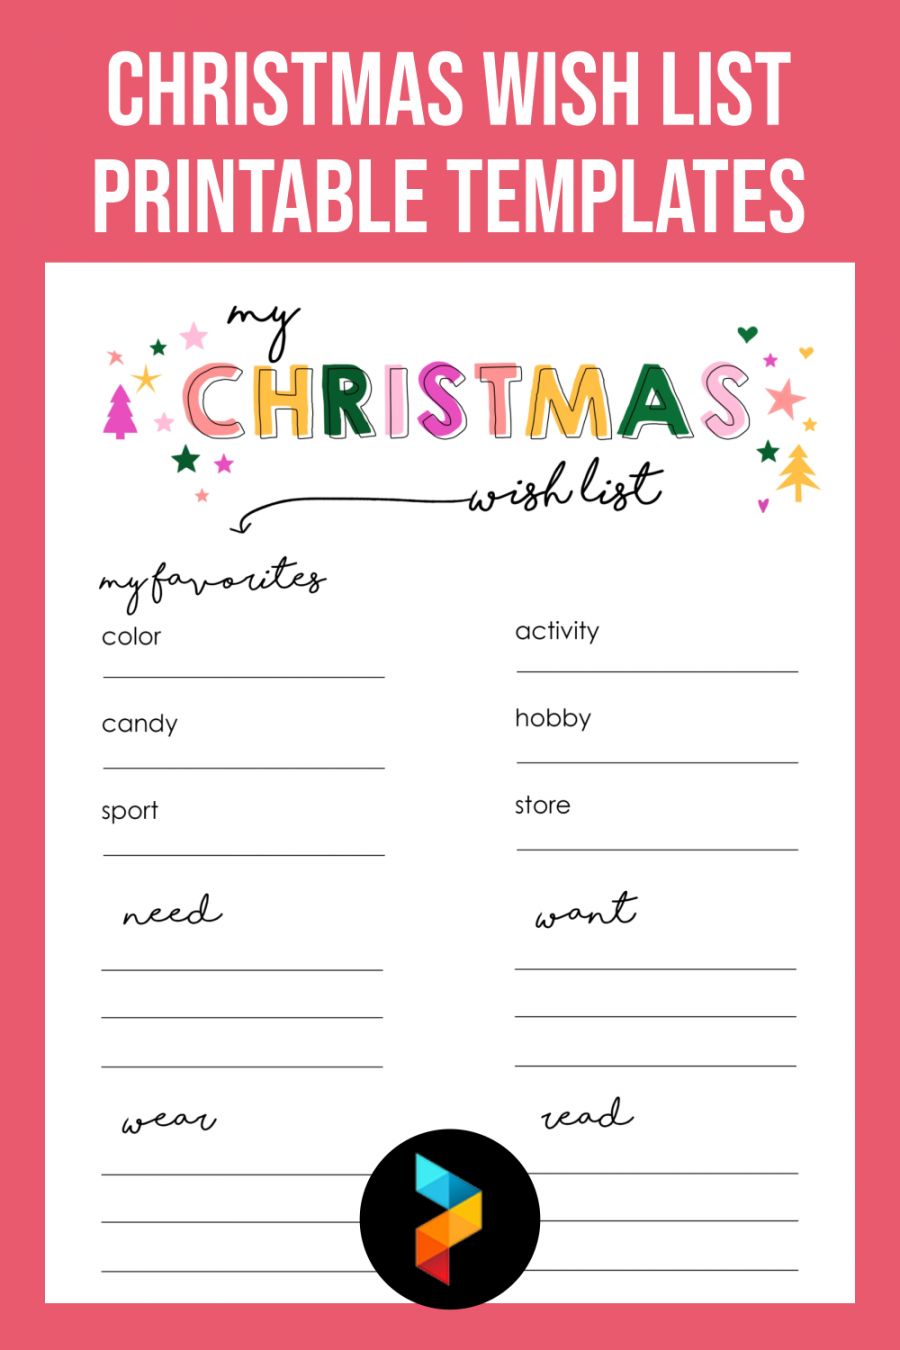 Printable Christmas List Template Free - Printable -  Best Christmas Wish List Free Printable Templates - printablee